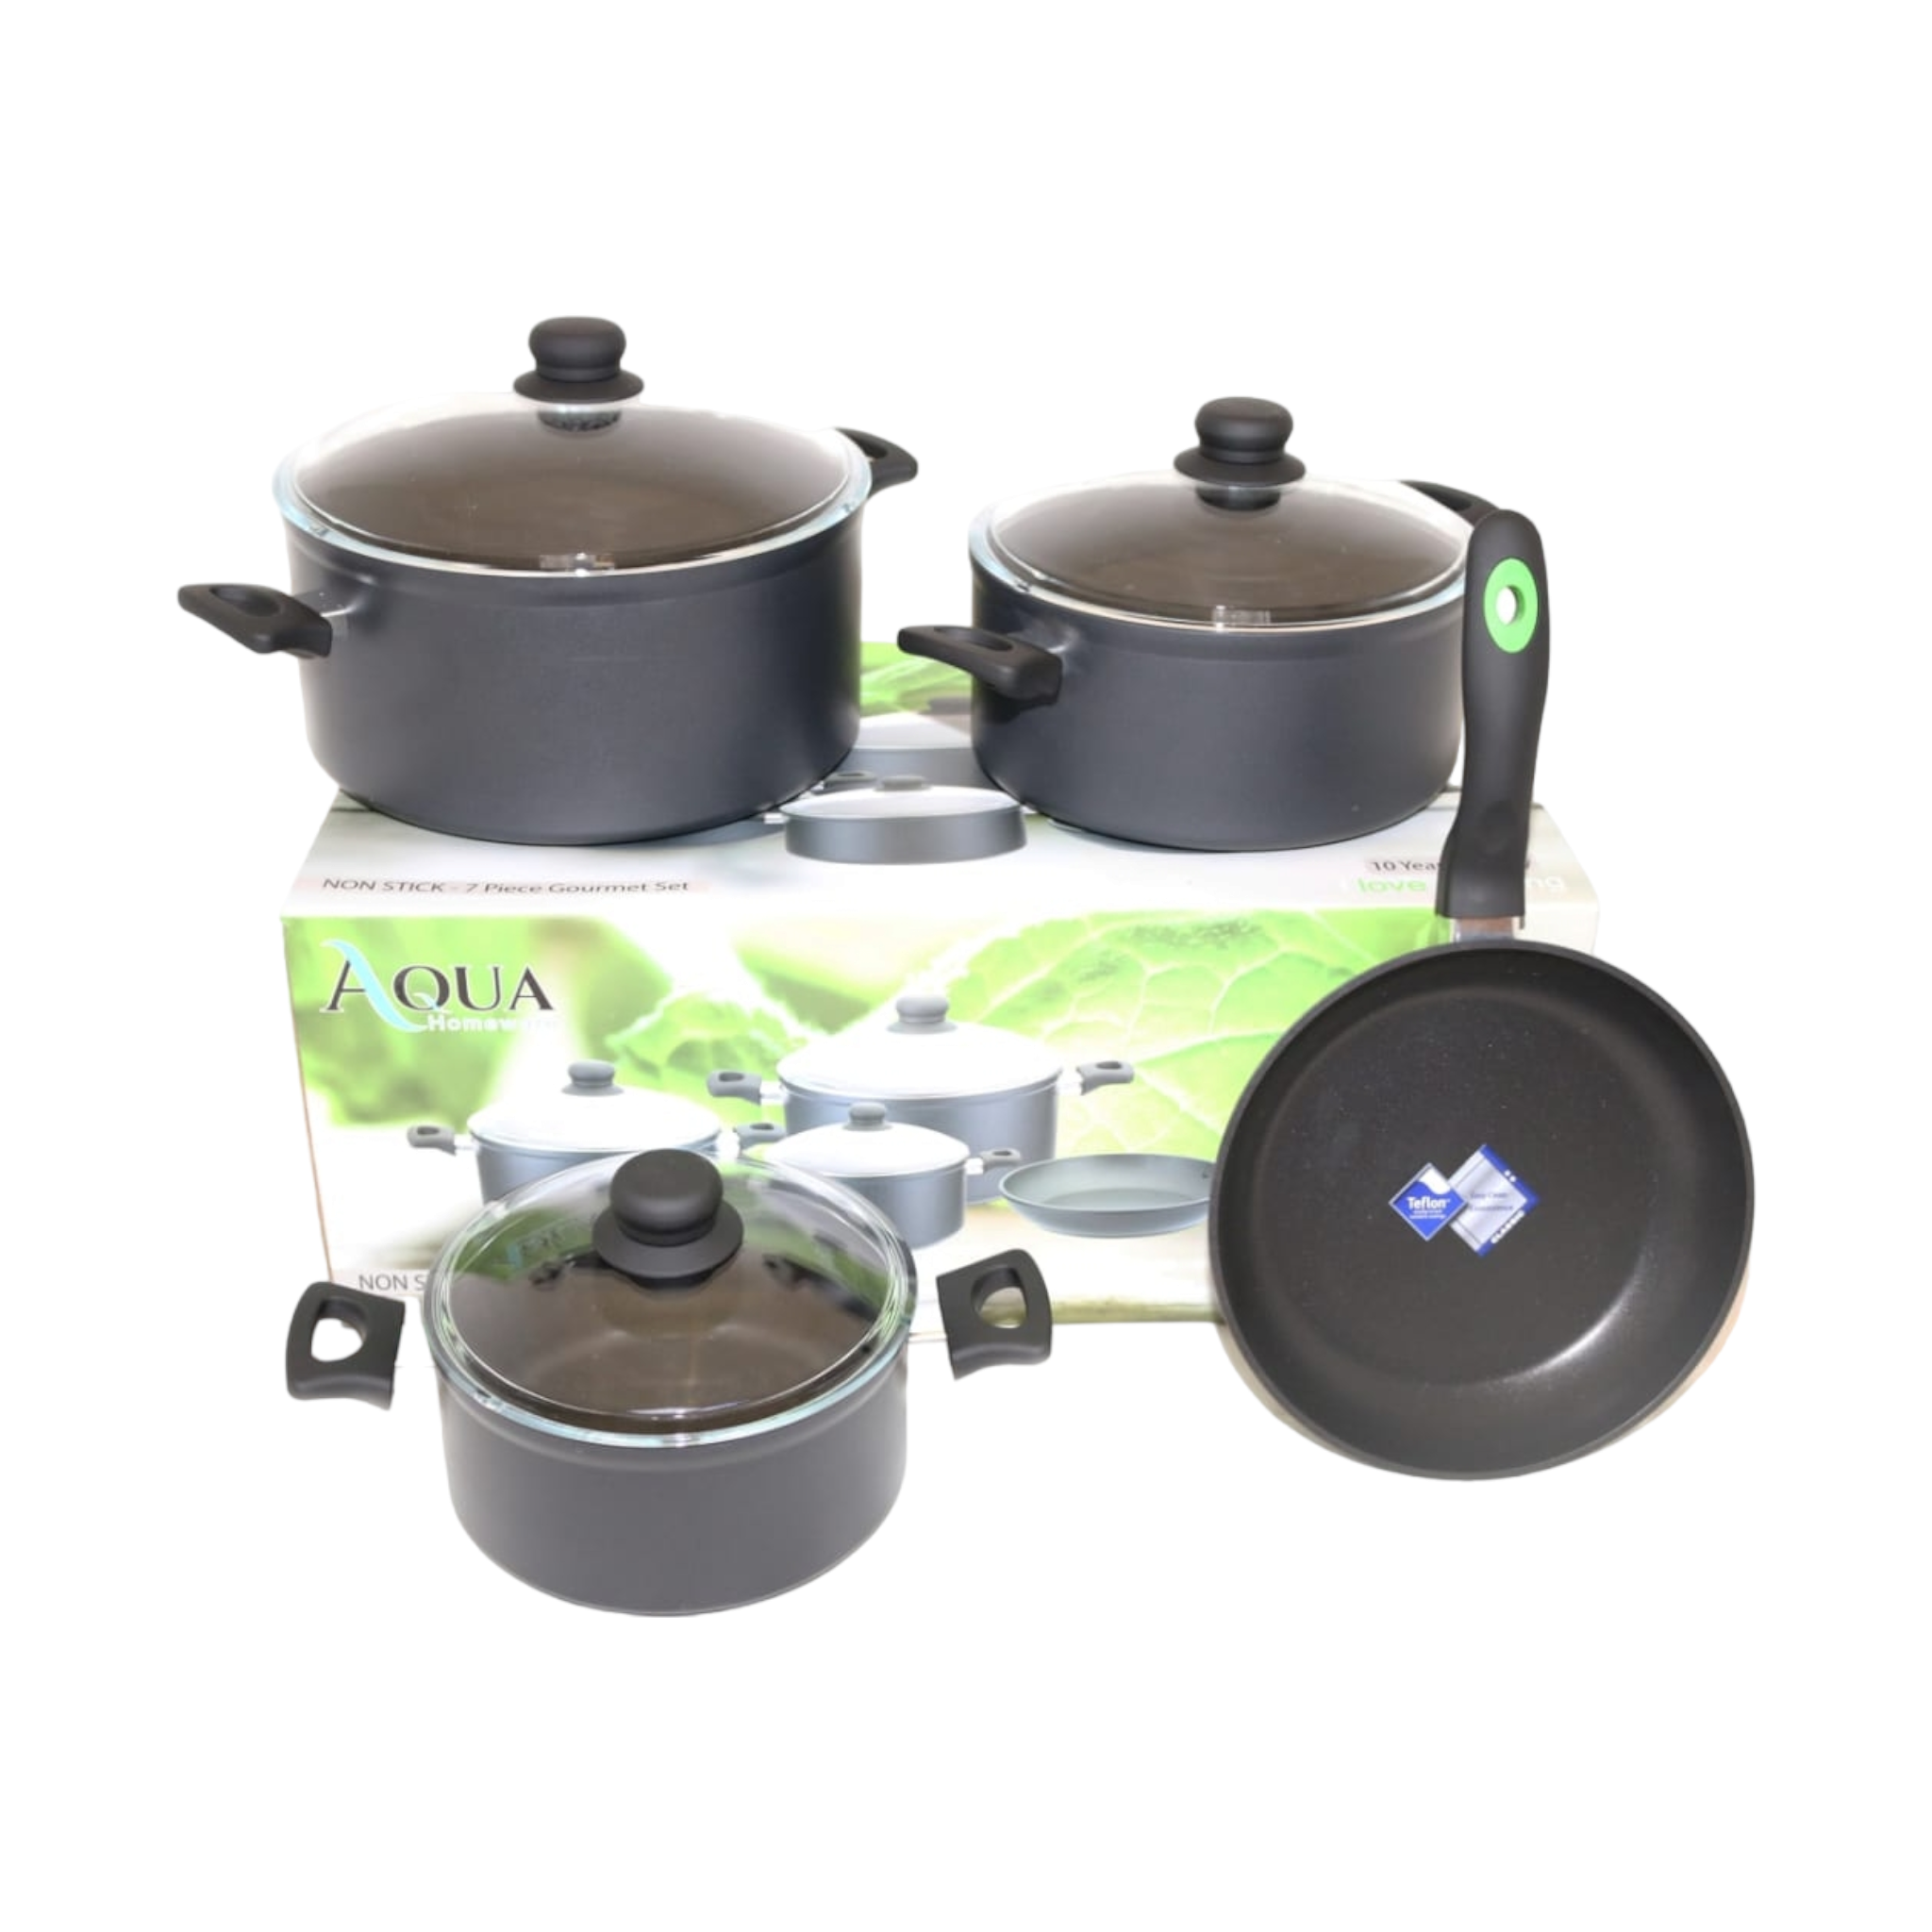 Aqua Cookware Pot Set 7pc 29722